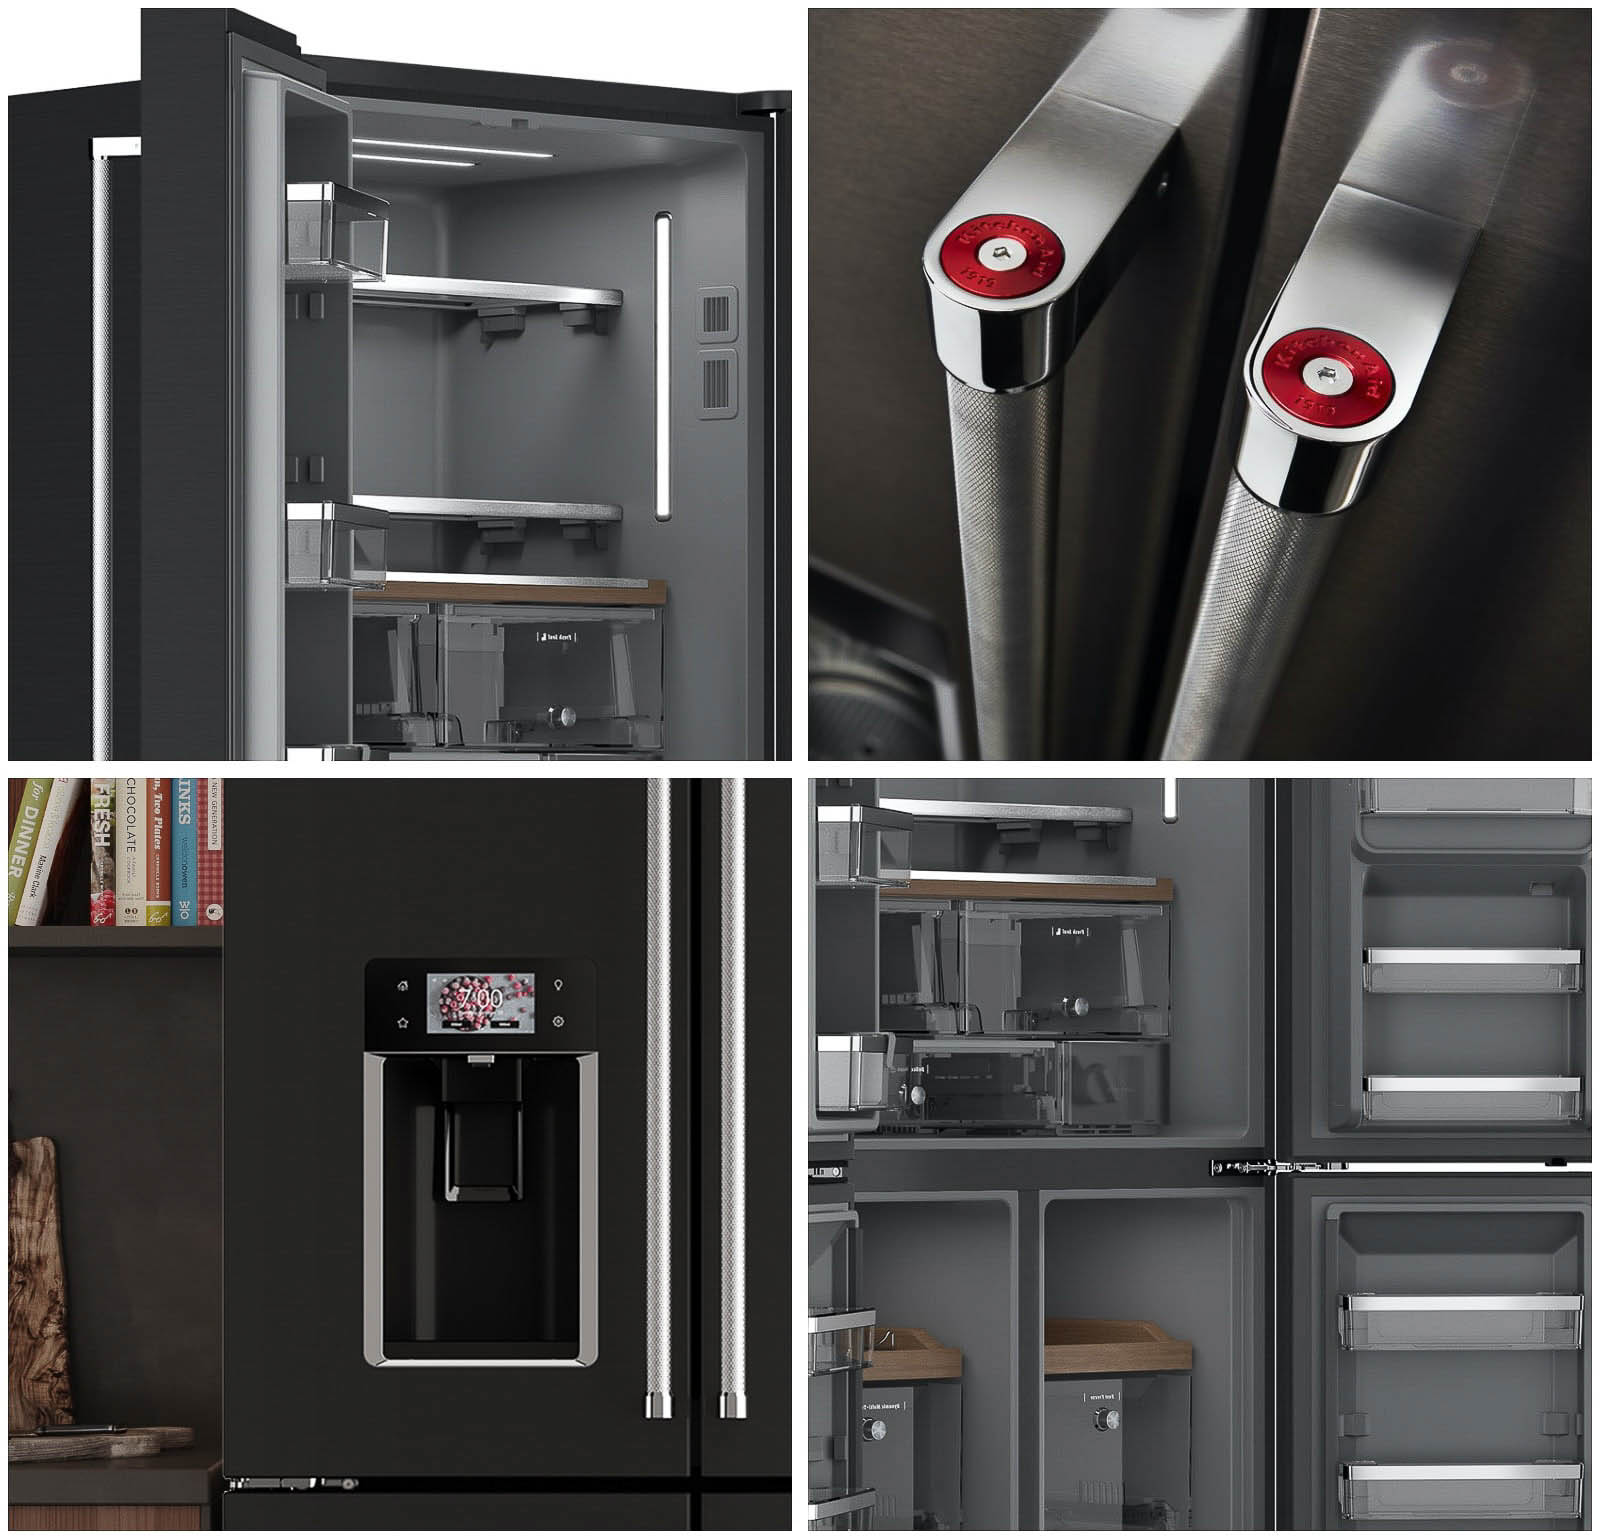 Black-stainless-steel-fridge-design